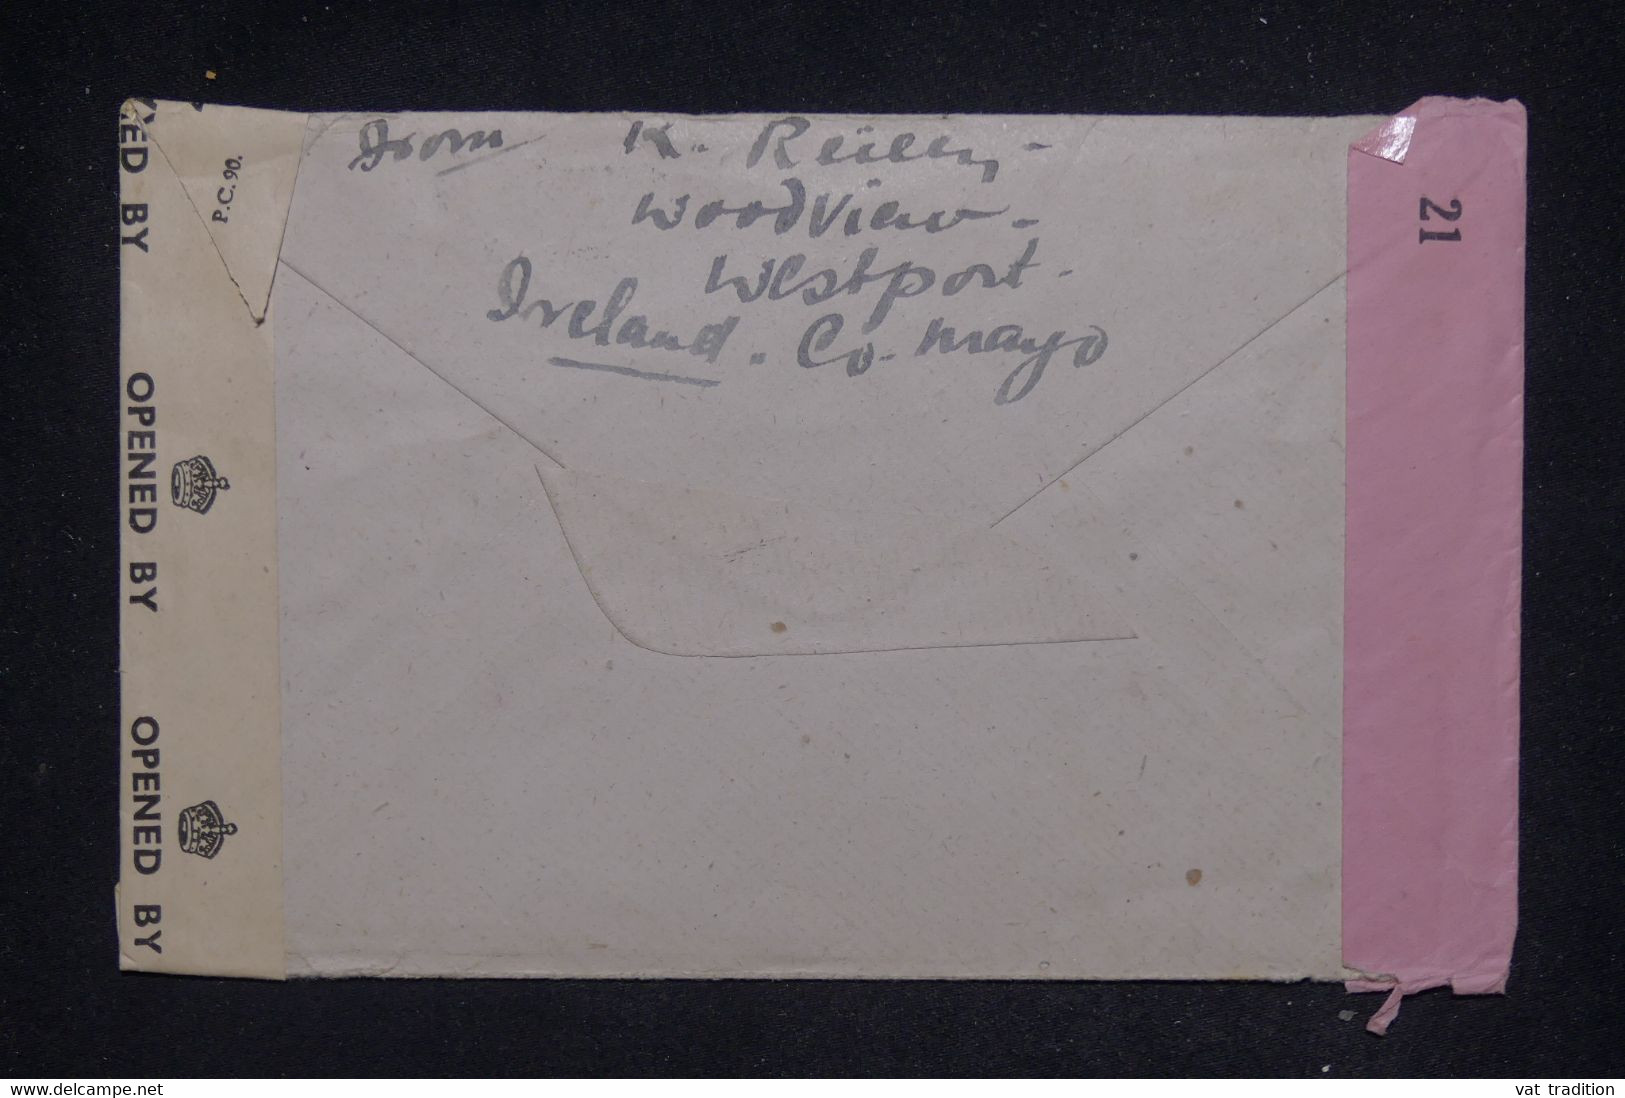 IRLANDE - Enveloppe De Westport Pour New York En 1943 Avec Contrôle Postal - L 137656 - Brieven En Documenten